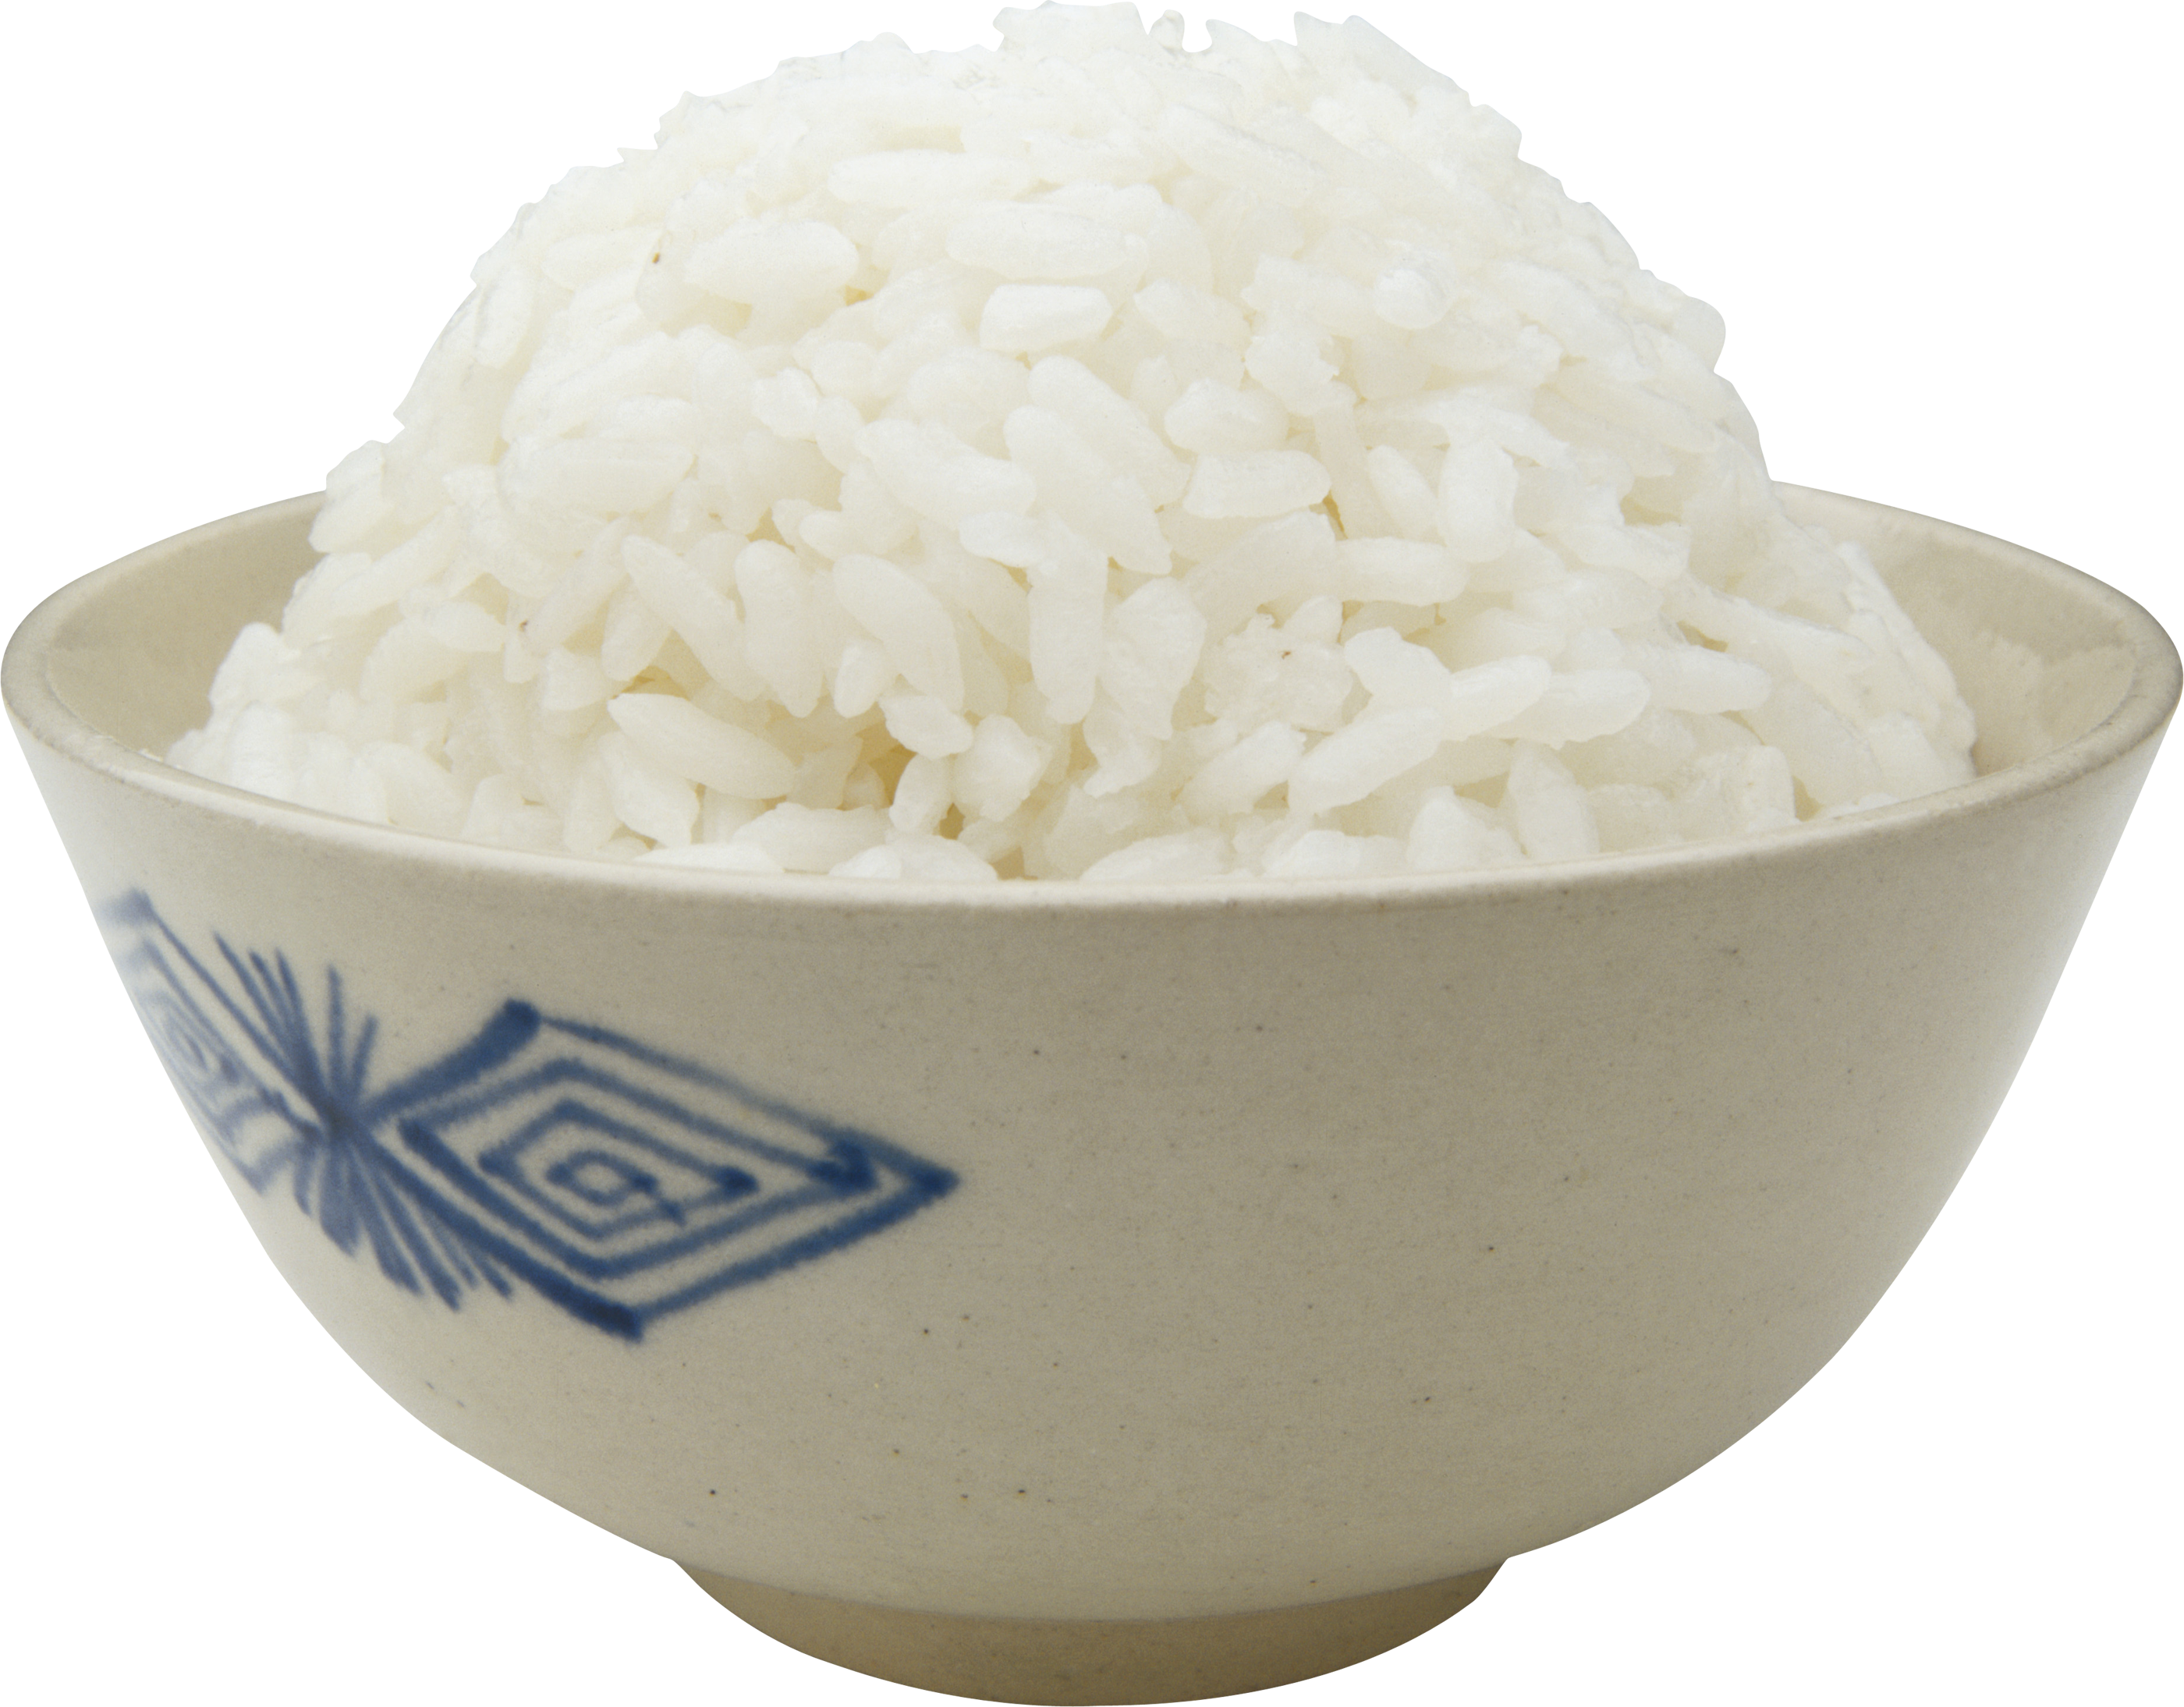 सादा चावल